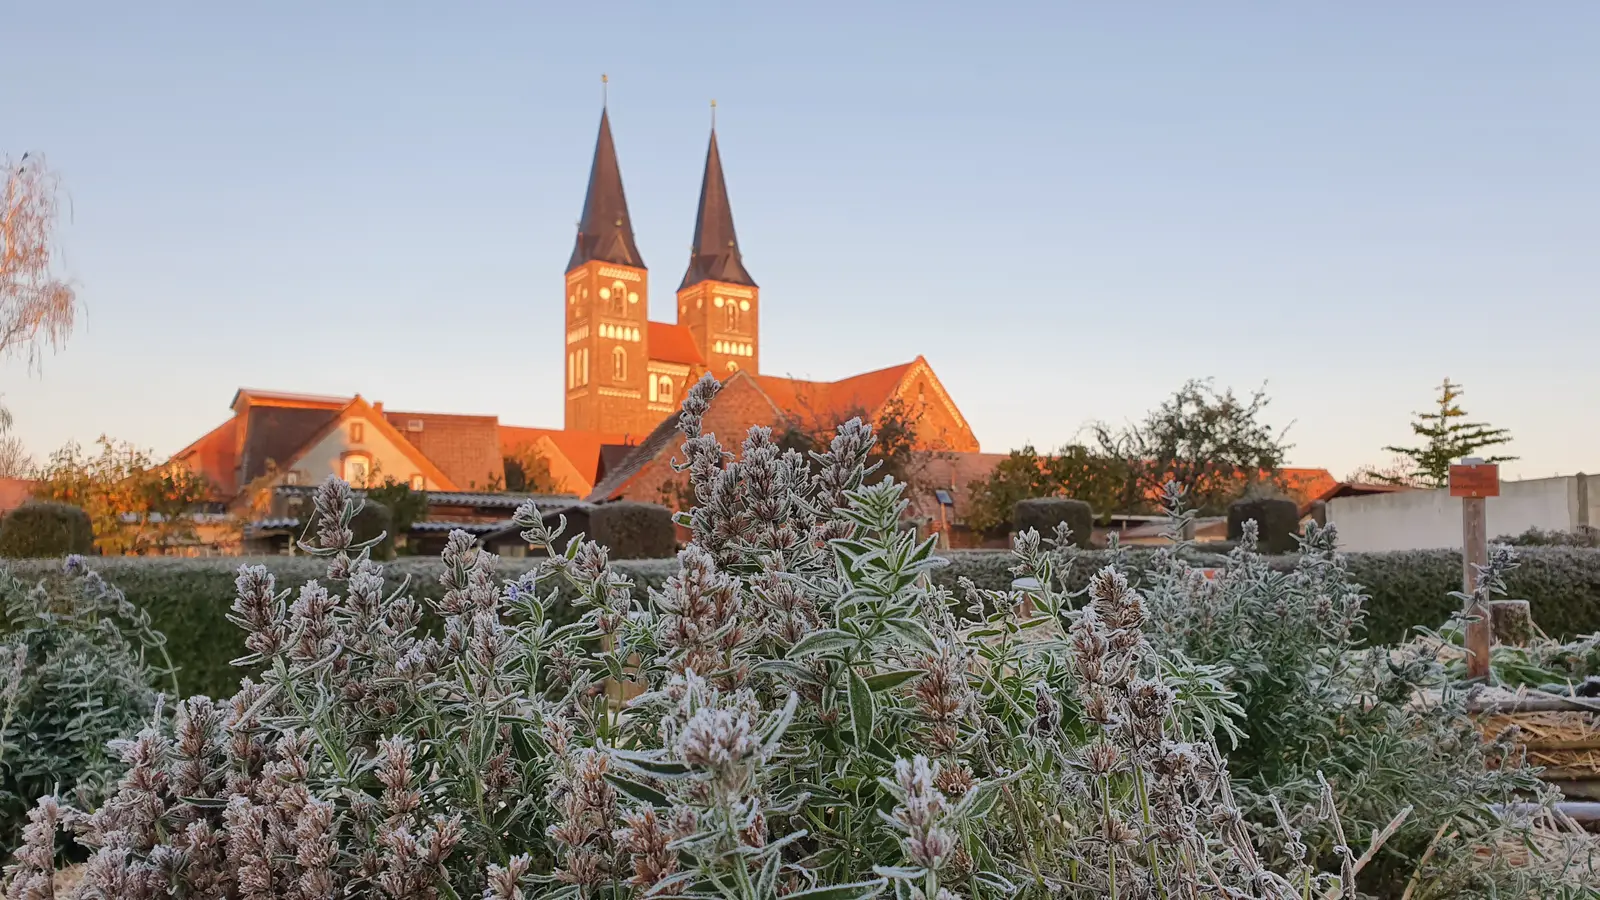 Kloster Jerichow gehört zu den Top Sehenswürdigkeiten der Altmark